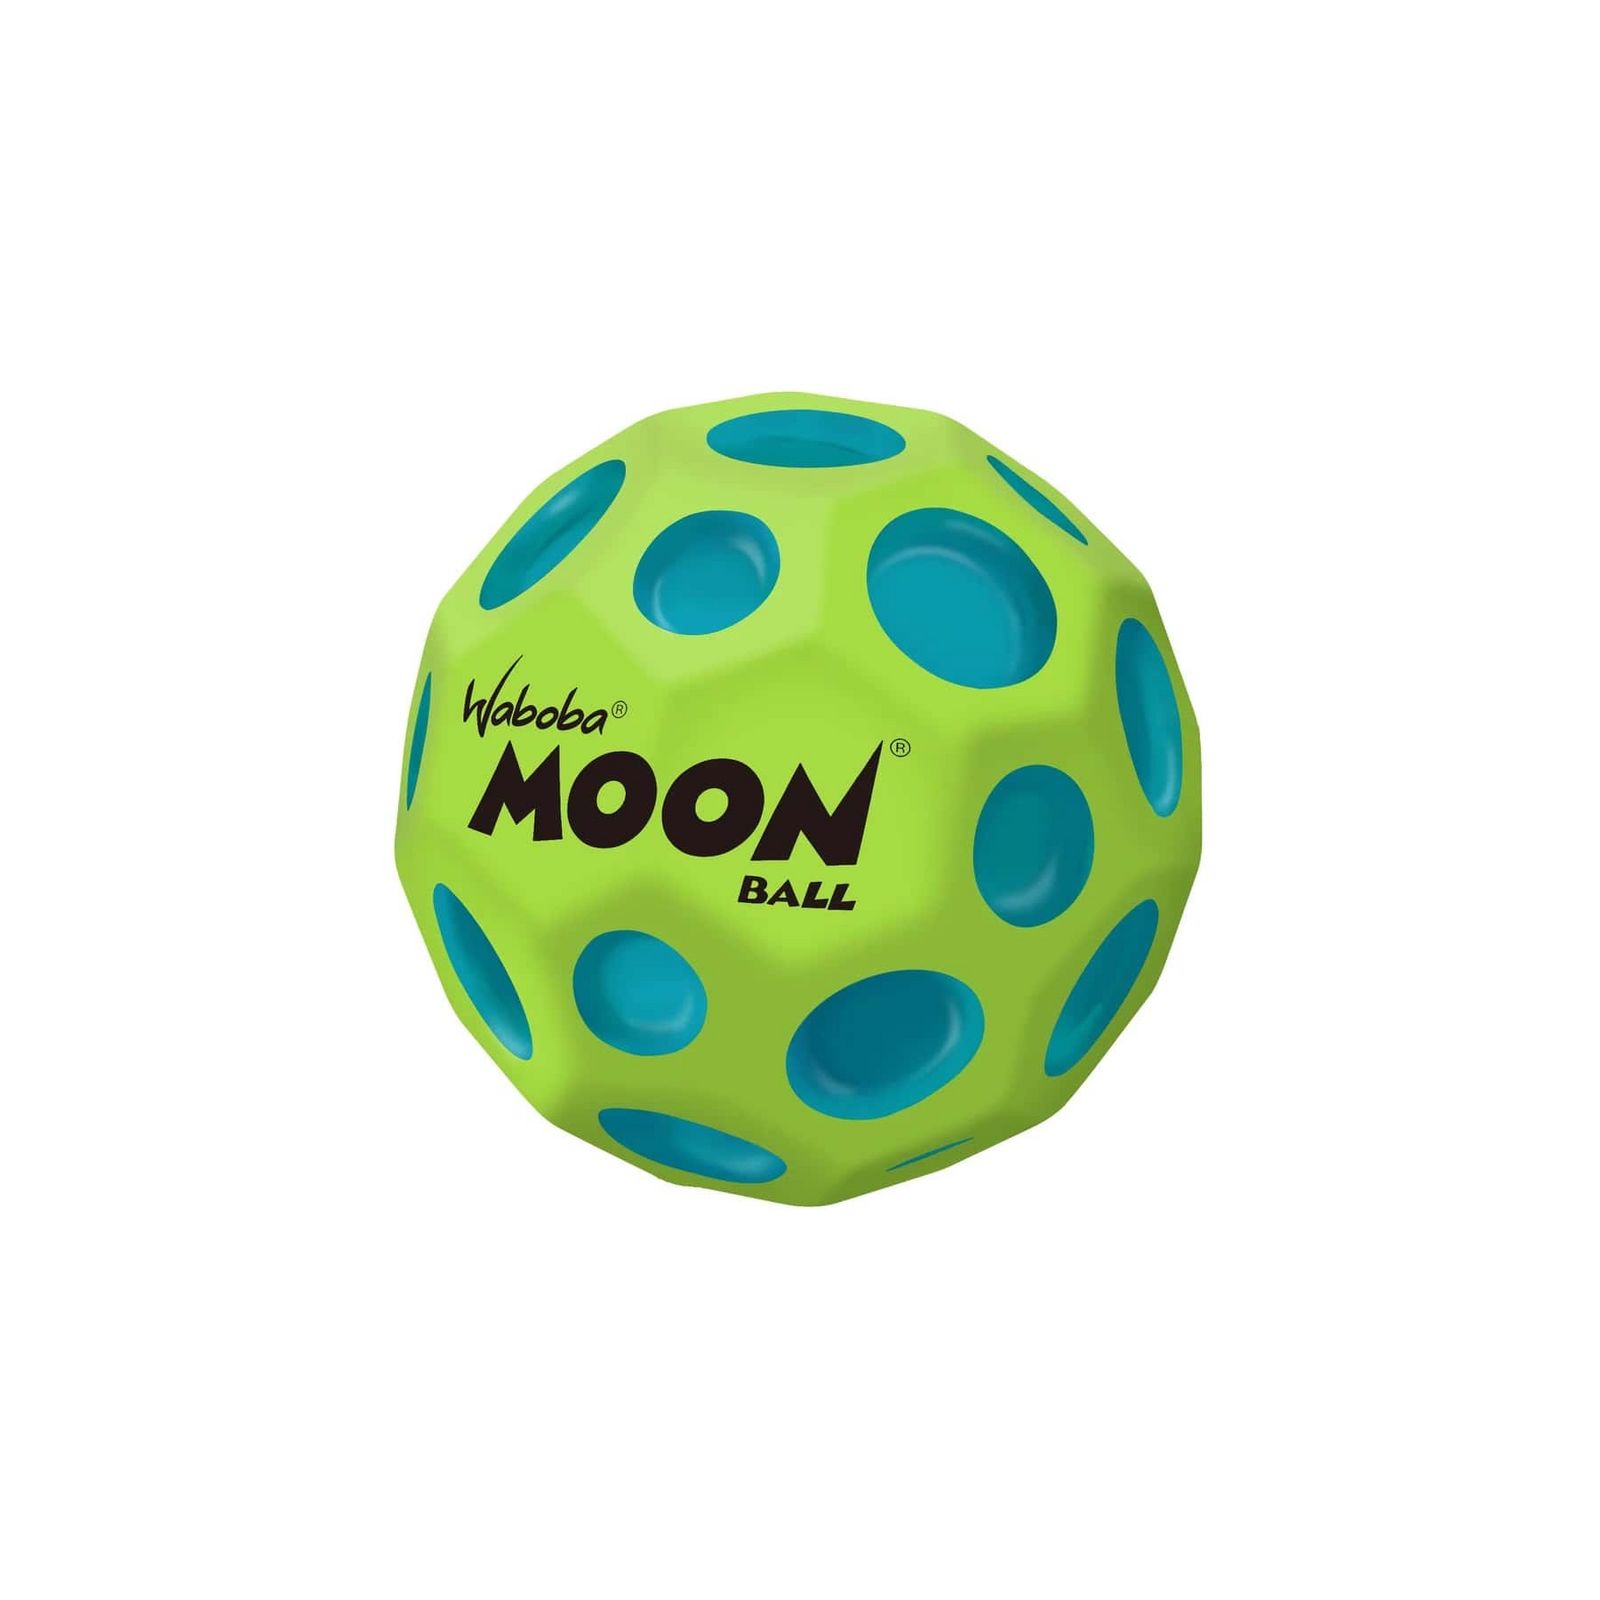 Waboba 3250614  Moon Ball MARTIAN – am Höchsten Springender Gummiball – Patentiertes Original-Design – Ballkrater Erzeugen beim Aufprall EIN knallendes Geräusch – Leicht Greifbar – Flummies für Kinder - 63mm MARTIAN grün-blau